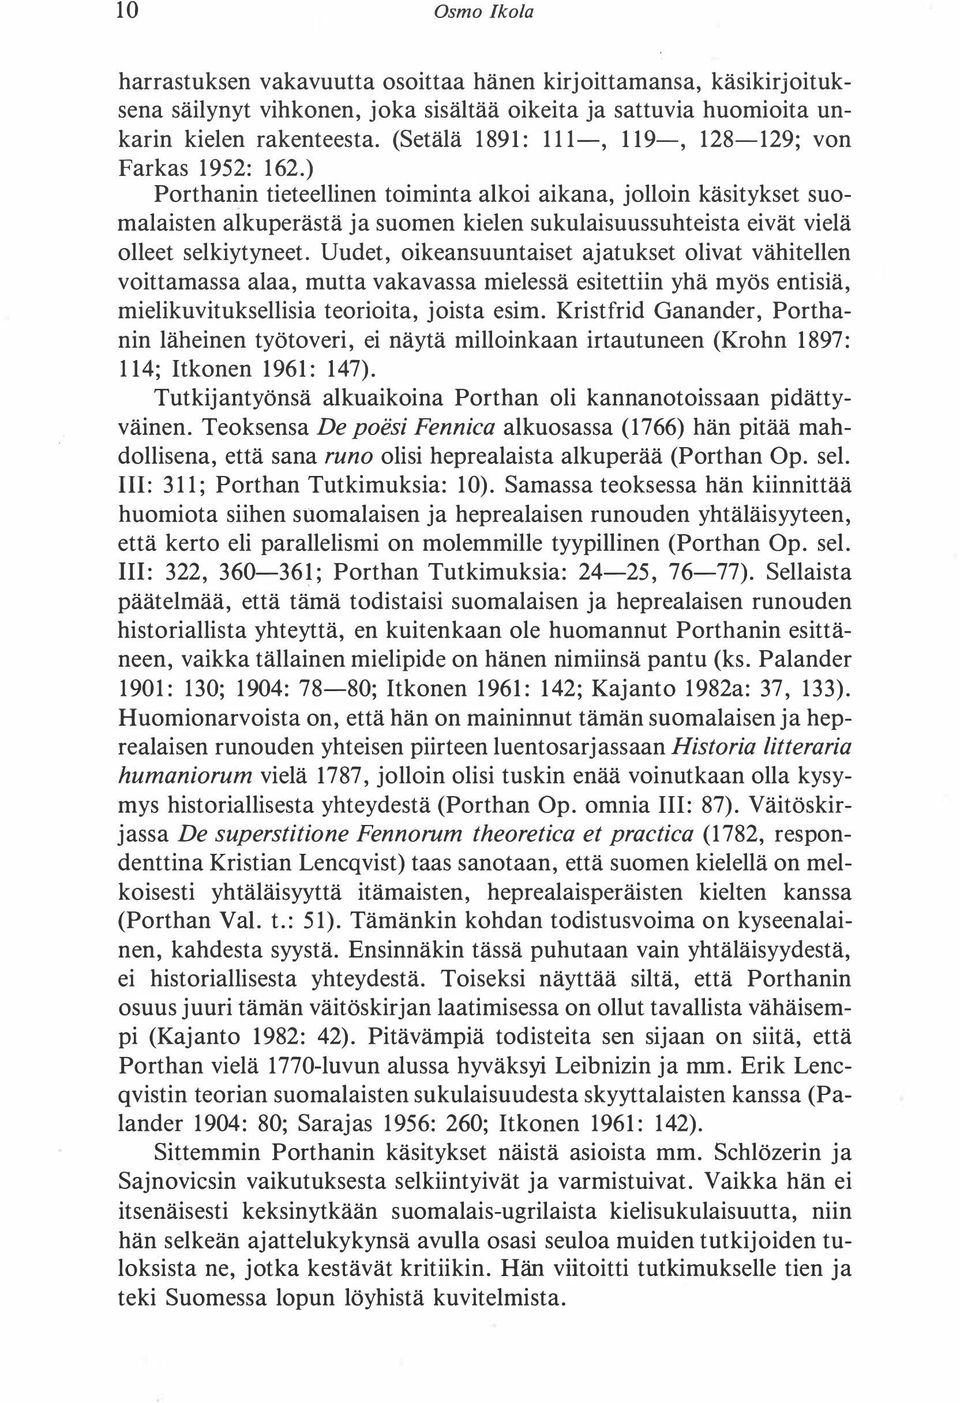 ) Porthanin tieteellinen toiminta alkoi aikana, jolloin käsitykset suomalaisten alkuperästä ja suomen kielen sukulaisuussuhteista eivät vielä olleet selkiytyneet.